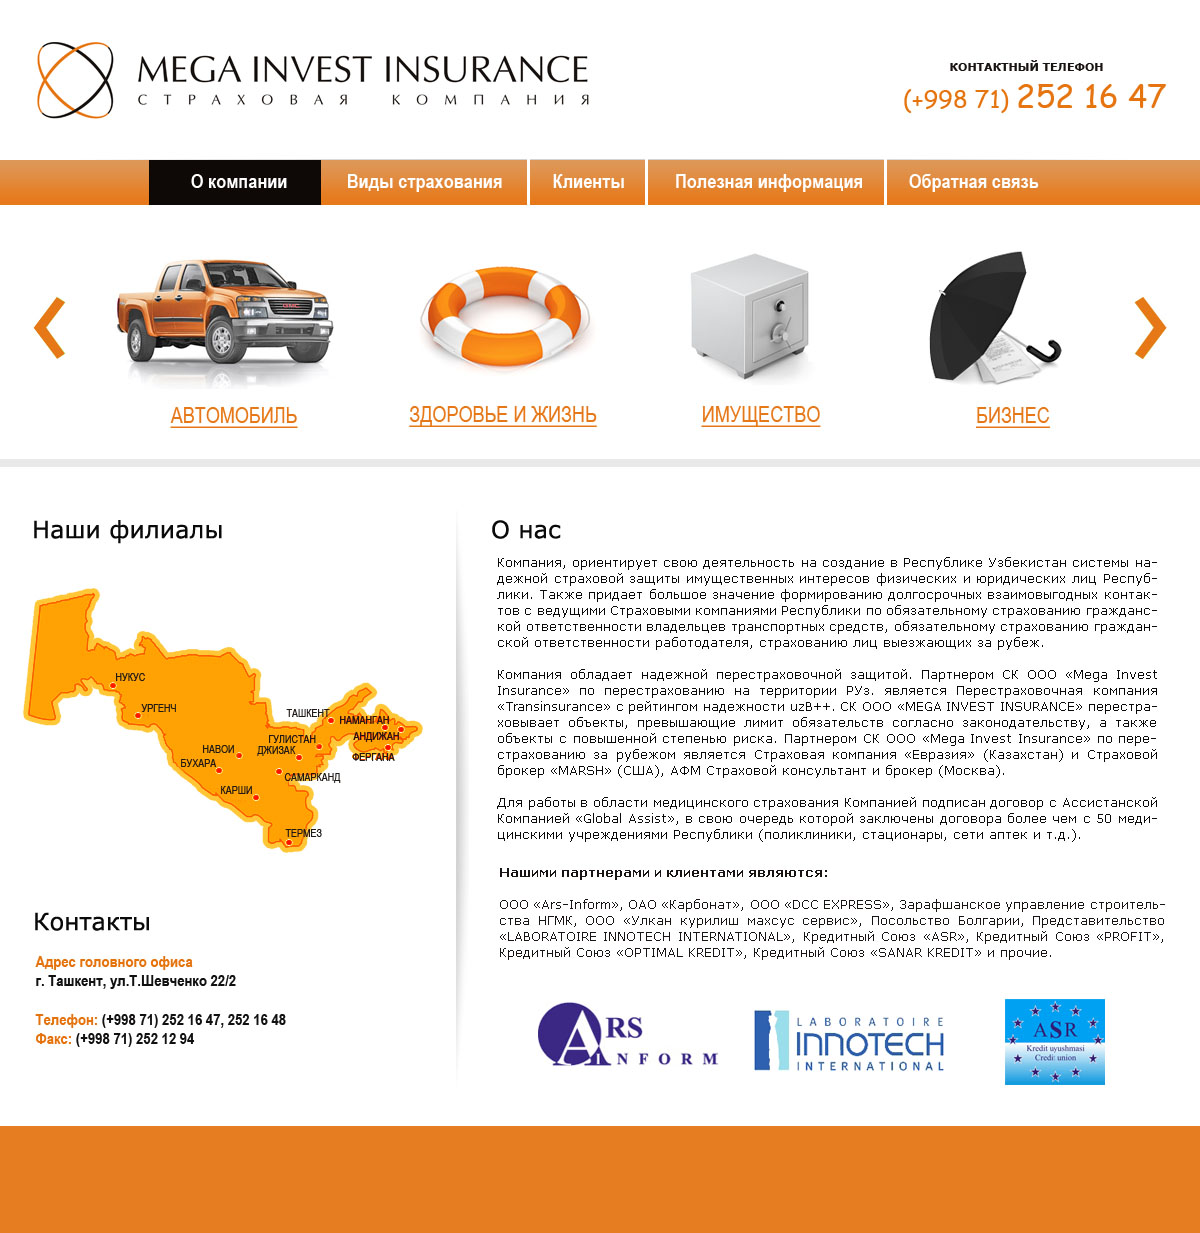 Страховая компания Mega Invest Insurance